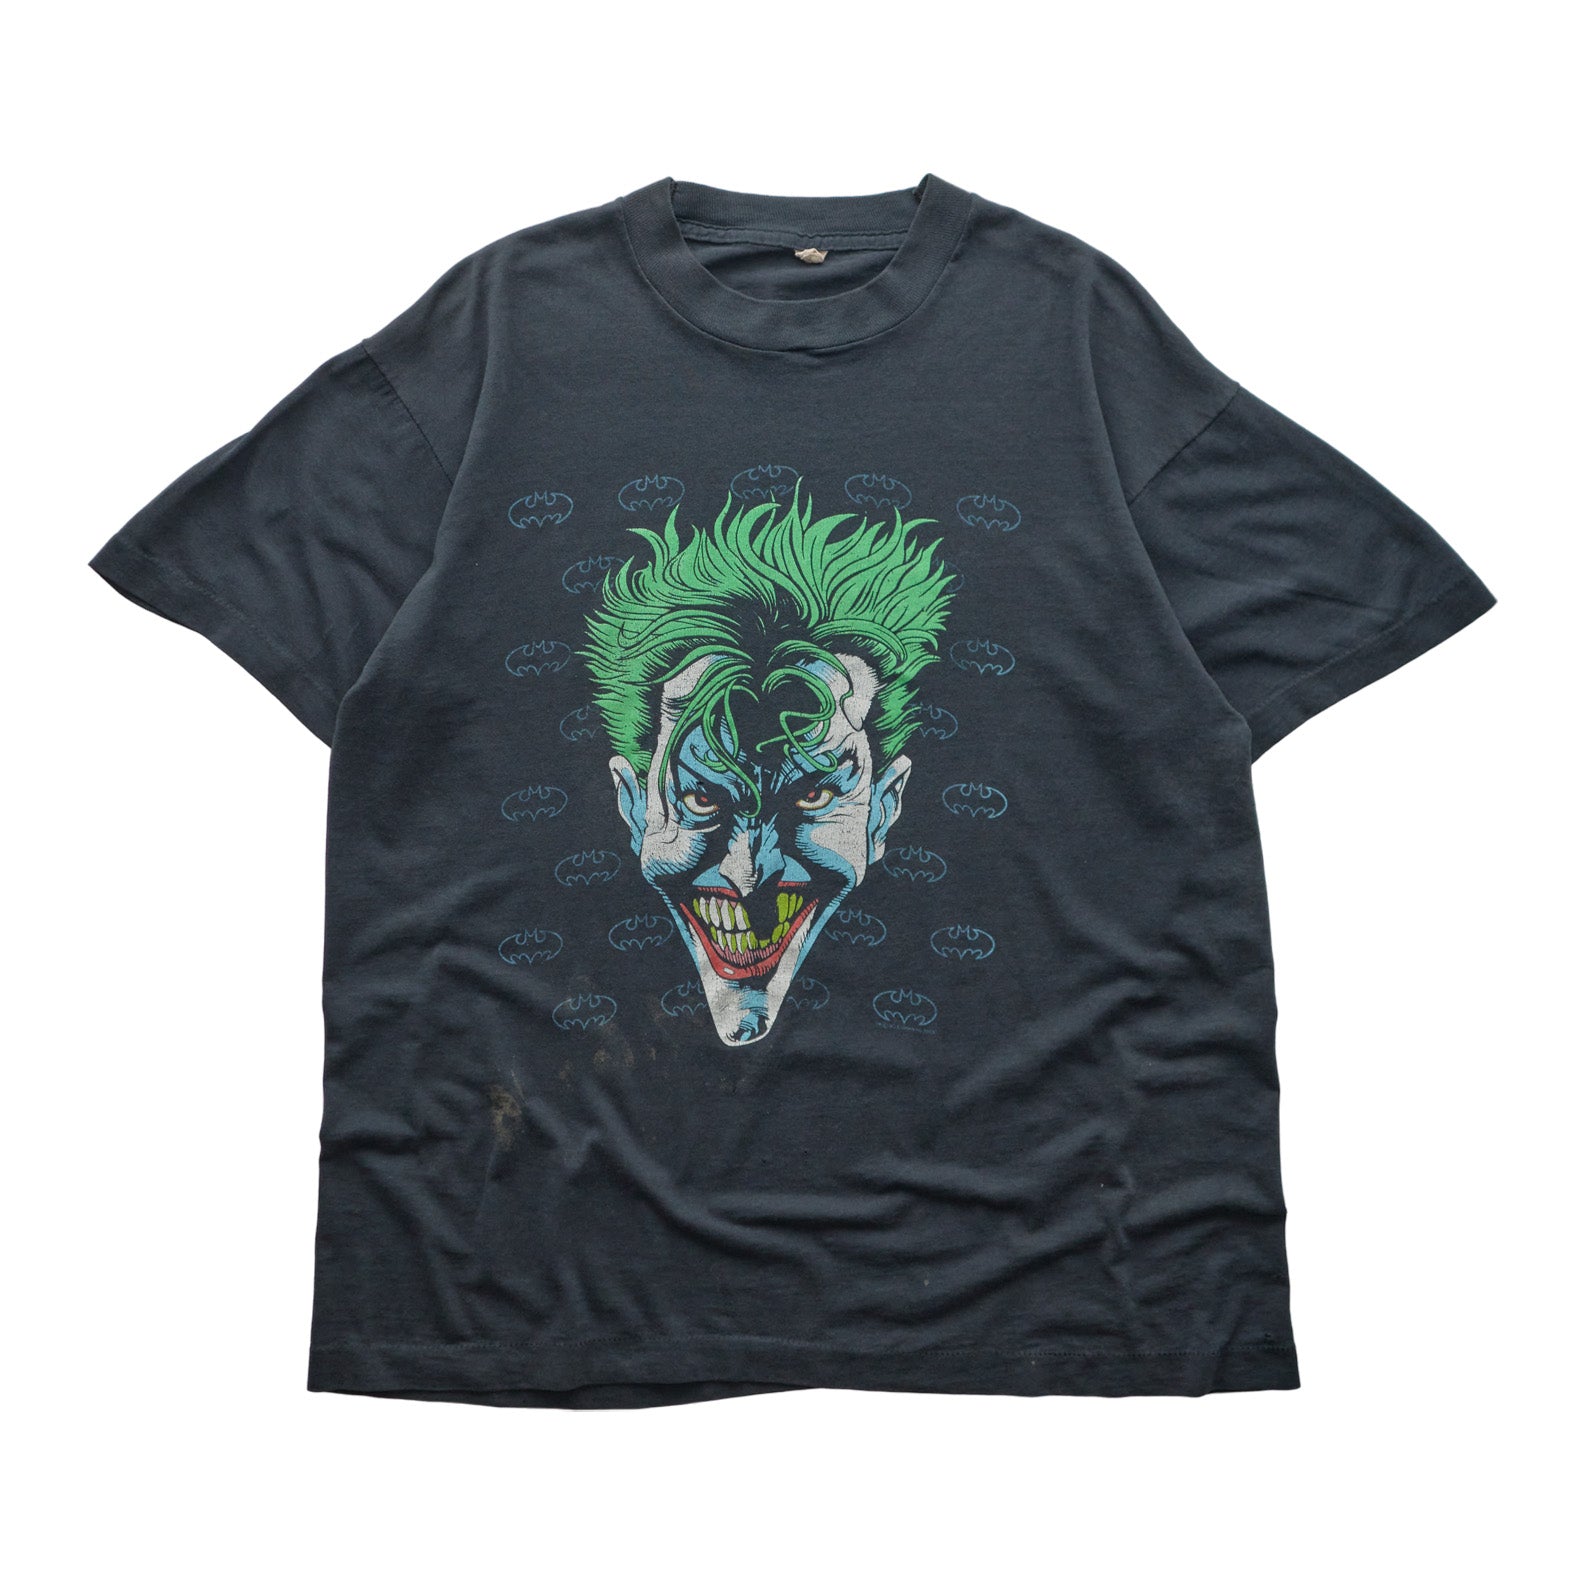 (S) 1989 Joker